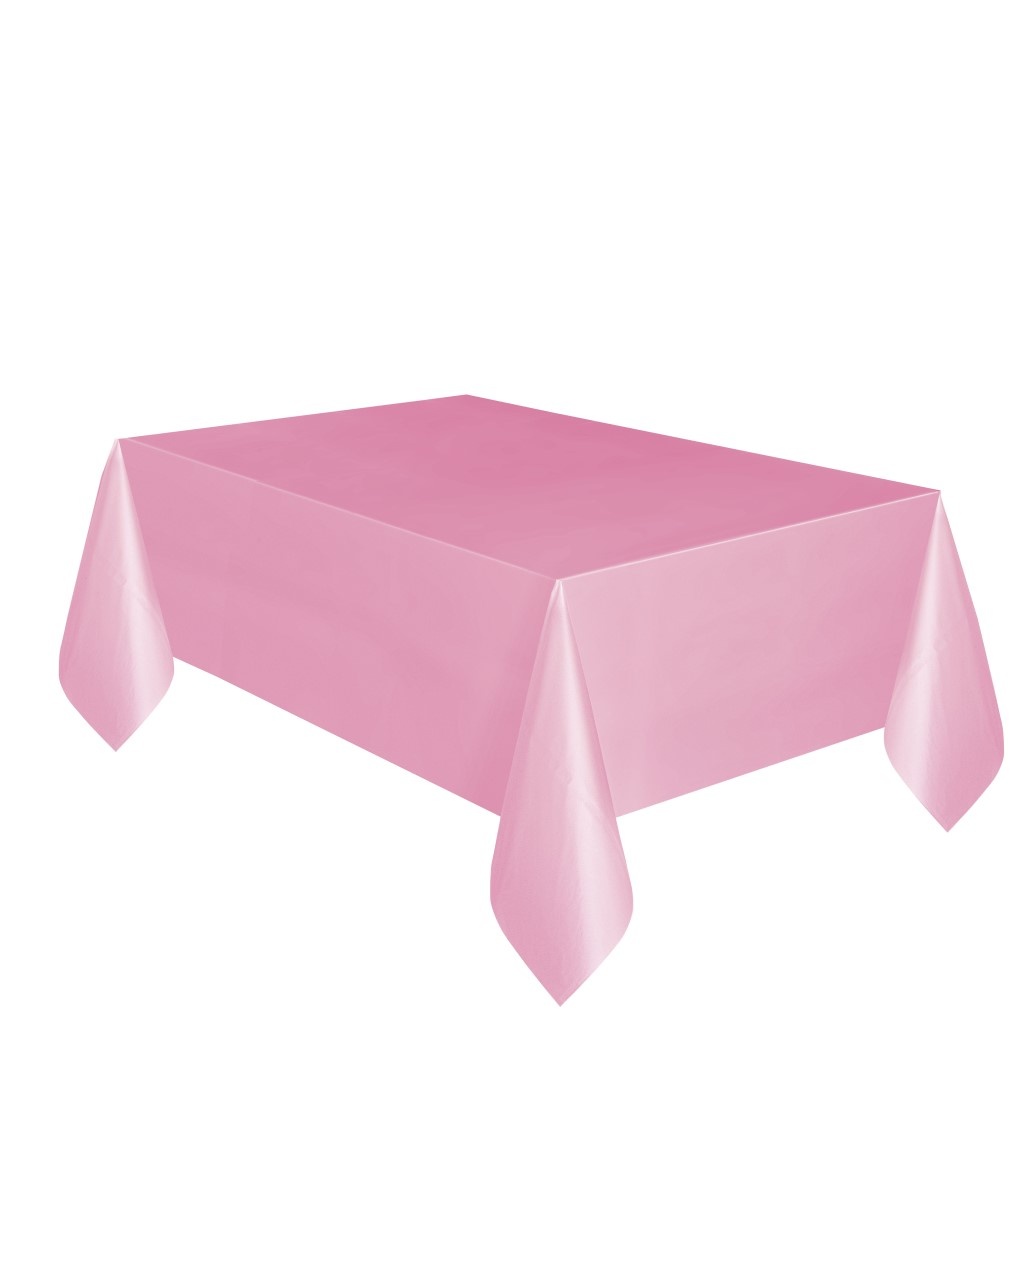 Tovaglia plastica 137 x 274 cm - rosa pastello - Bigiemme